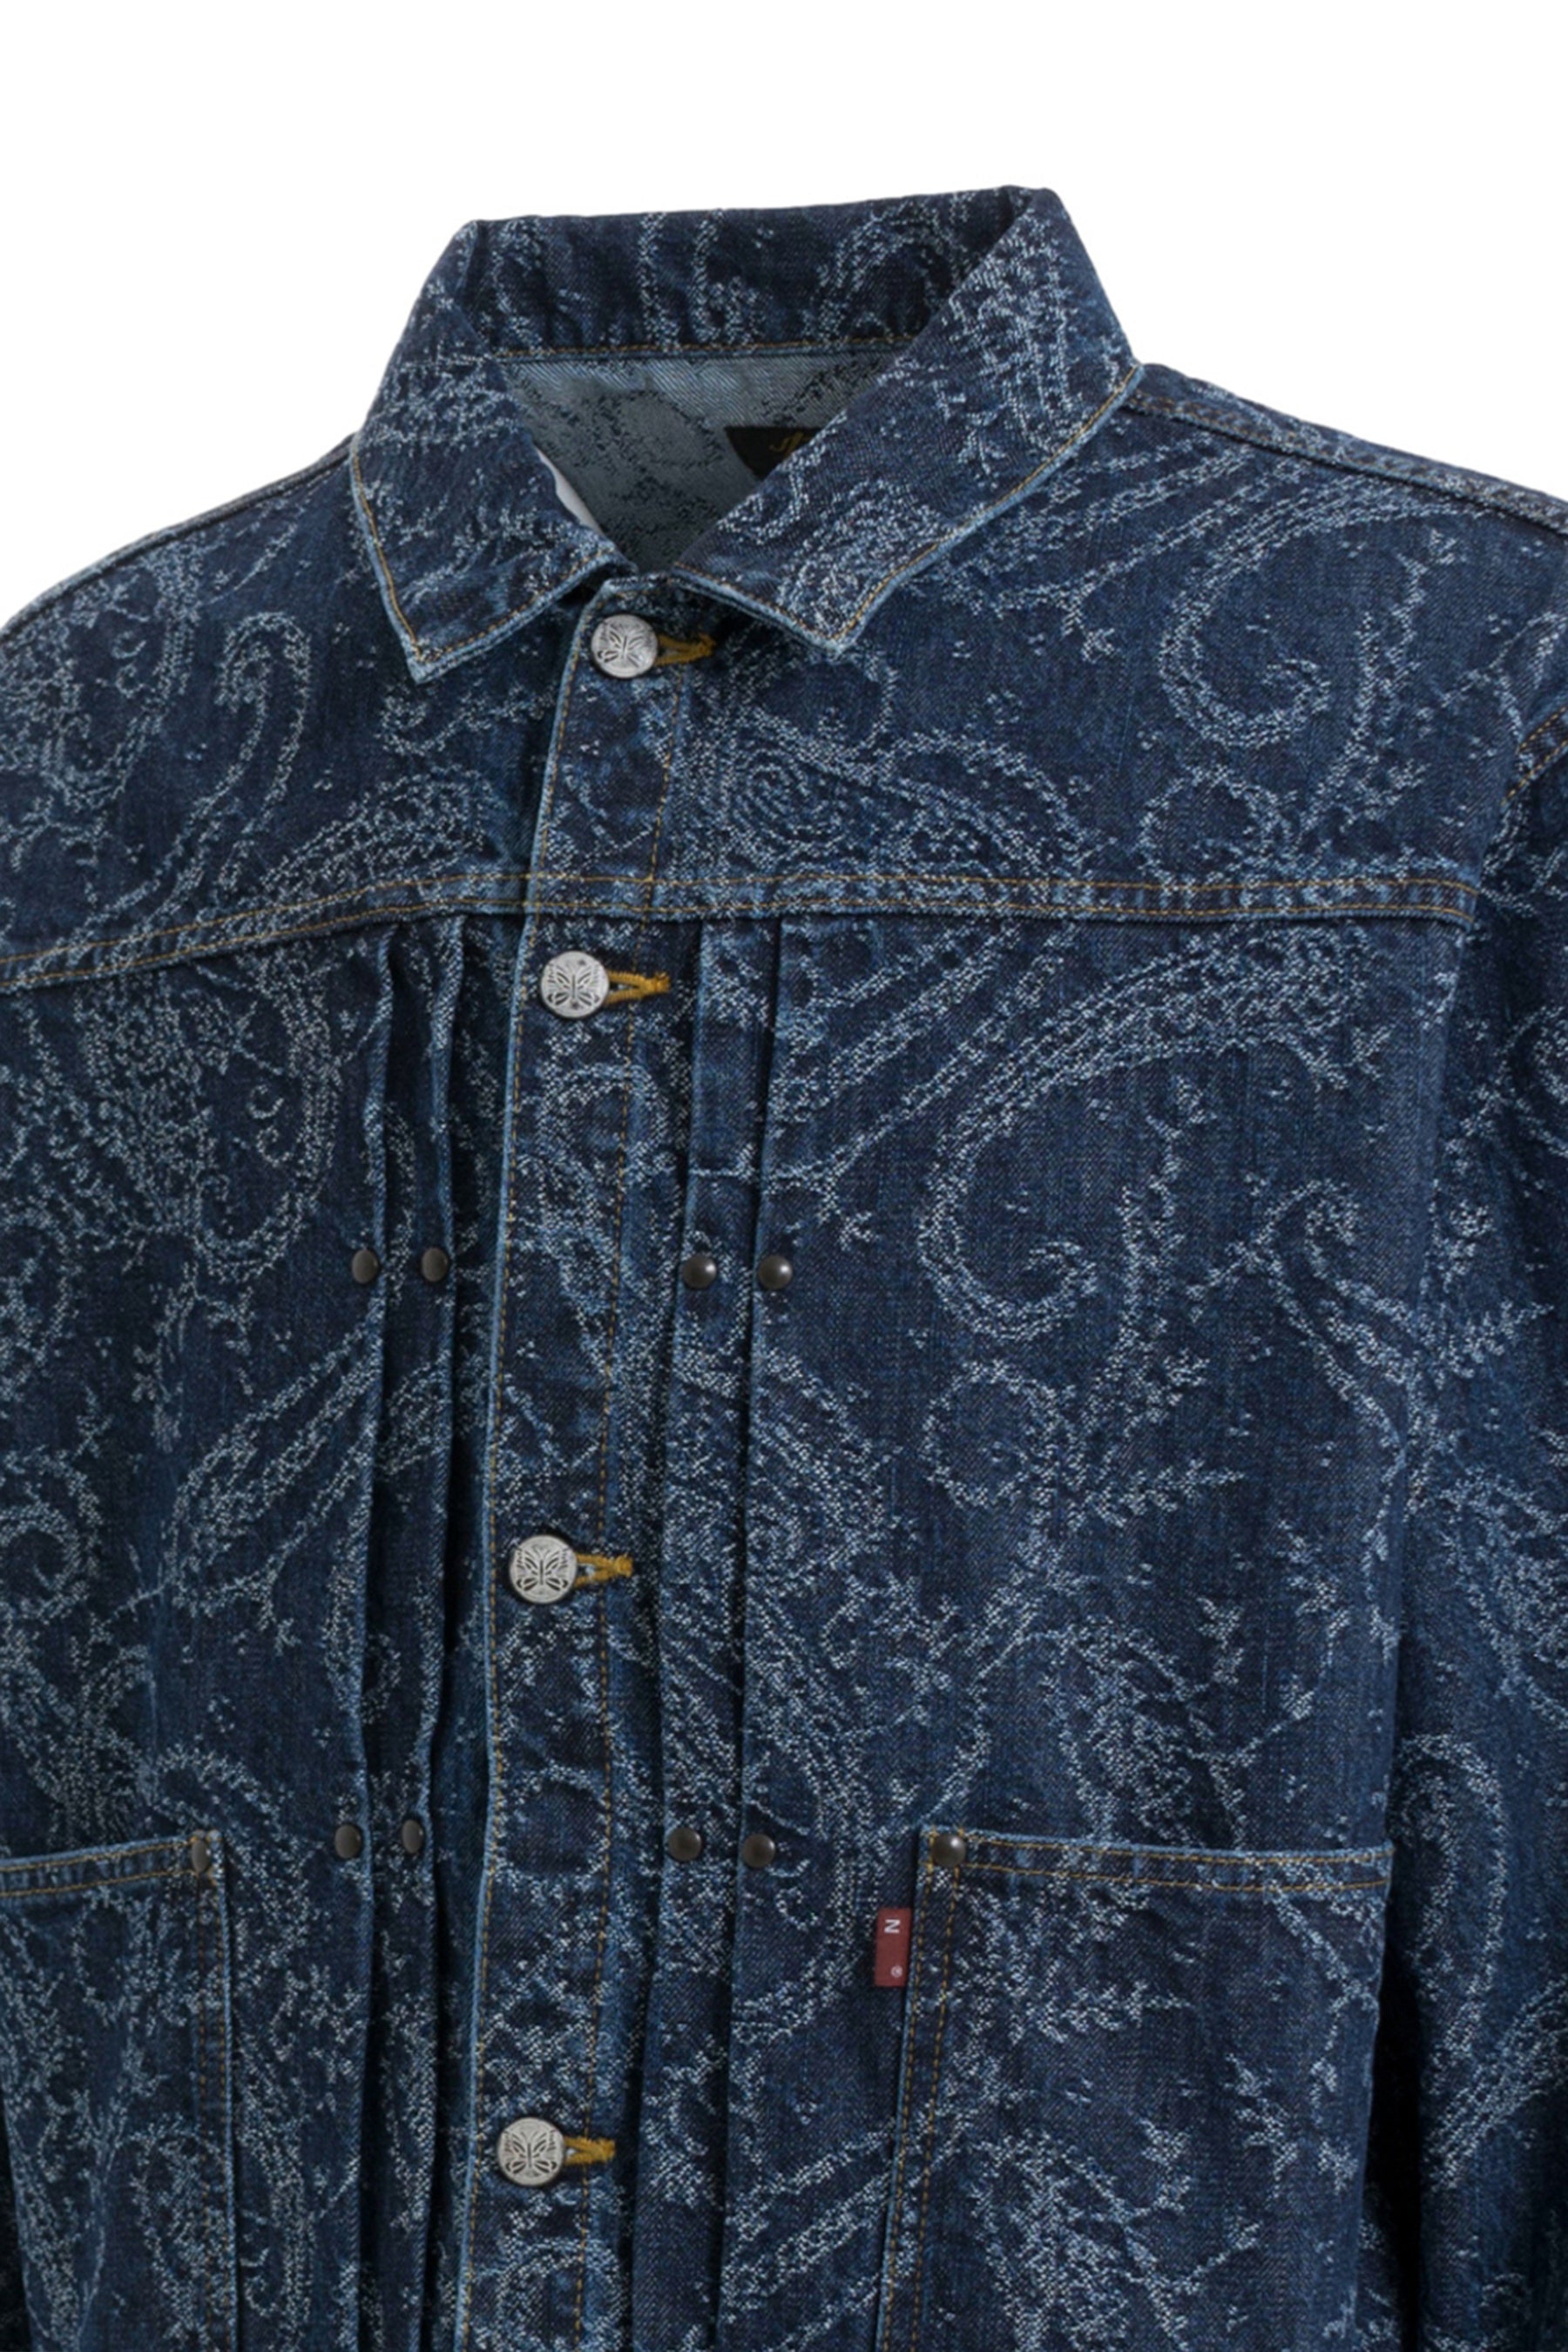 Givenchy Men's Distressed Patchwork Denim Jacket